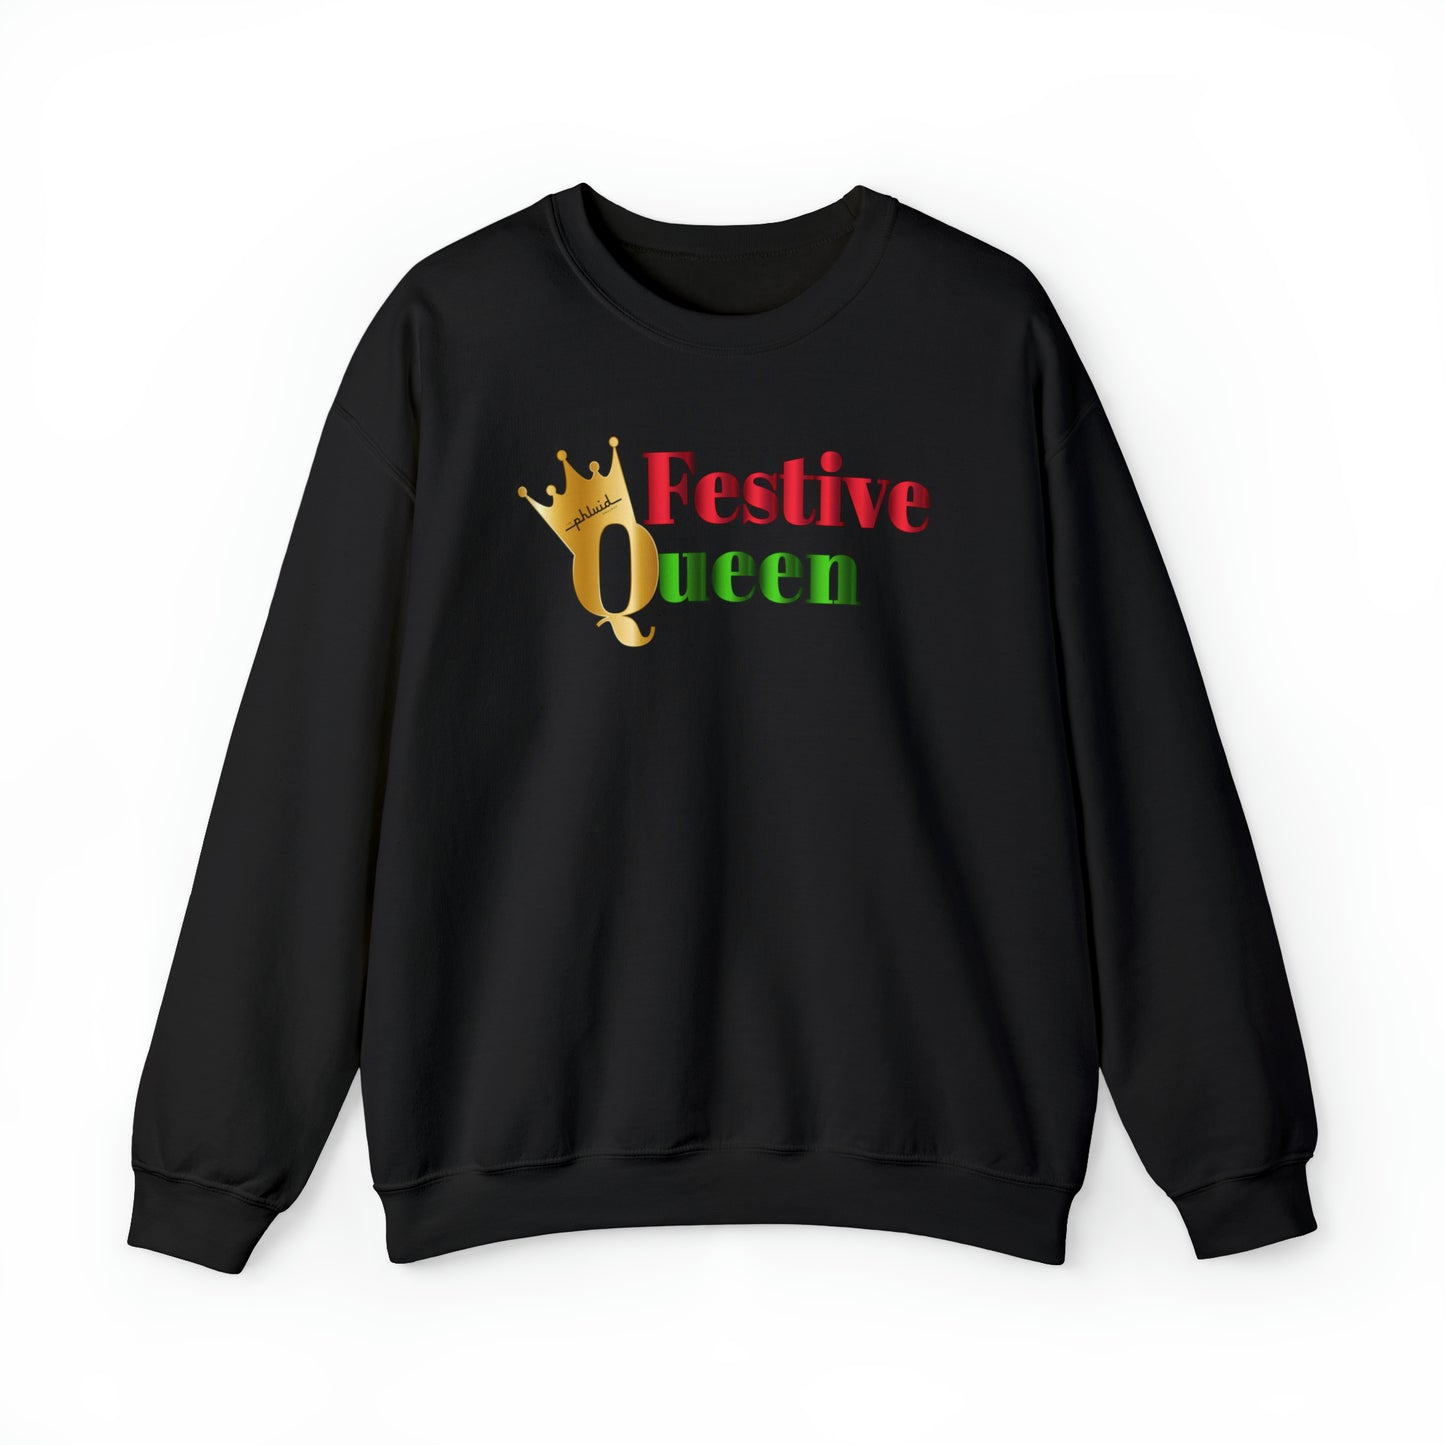 Festive Queen Crewneck Sweatshirt